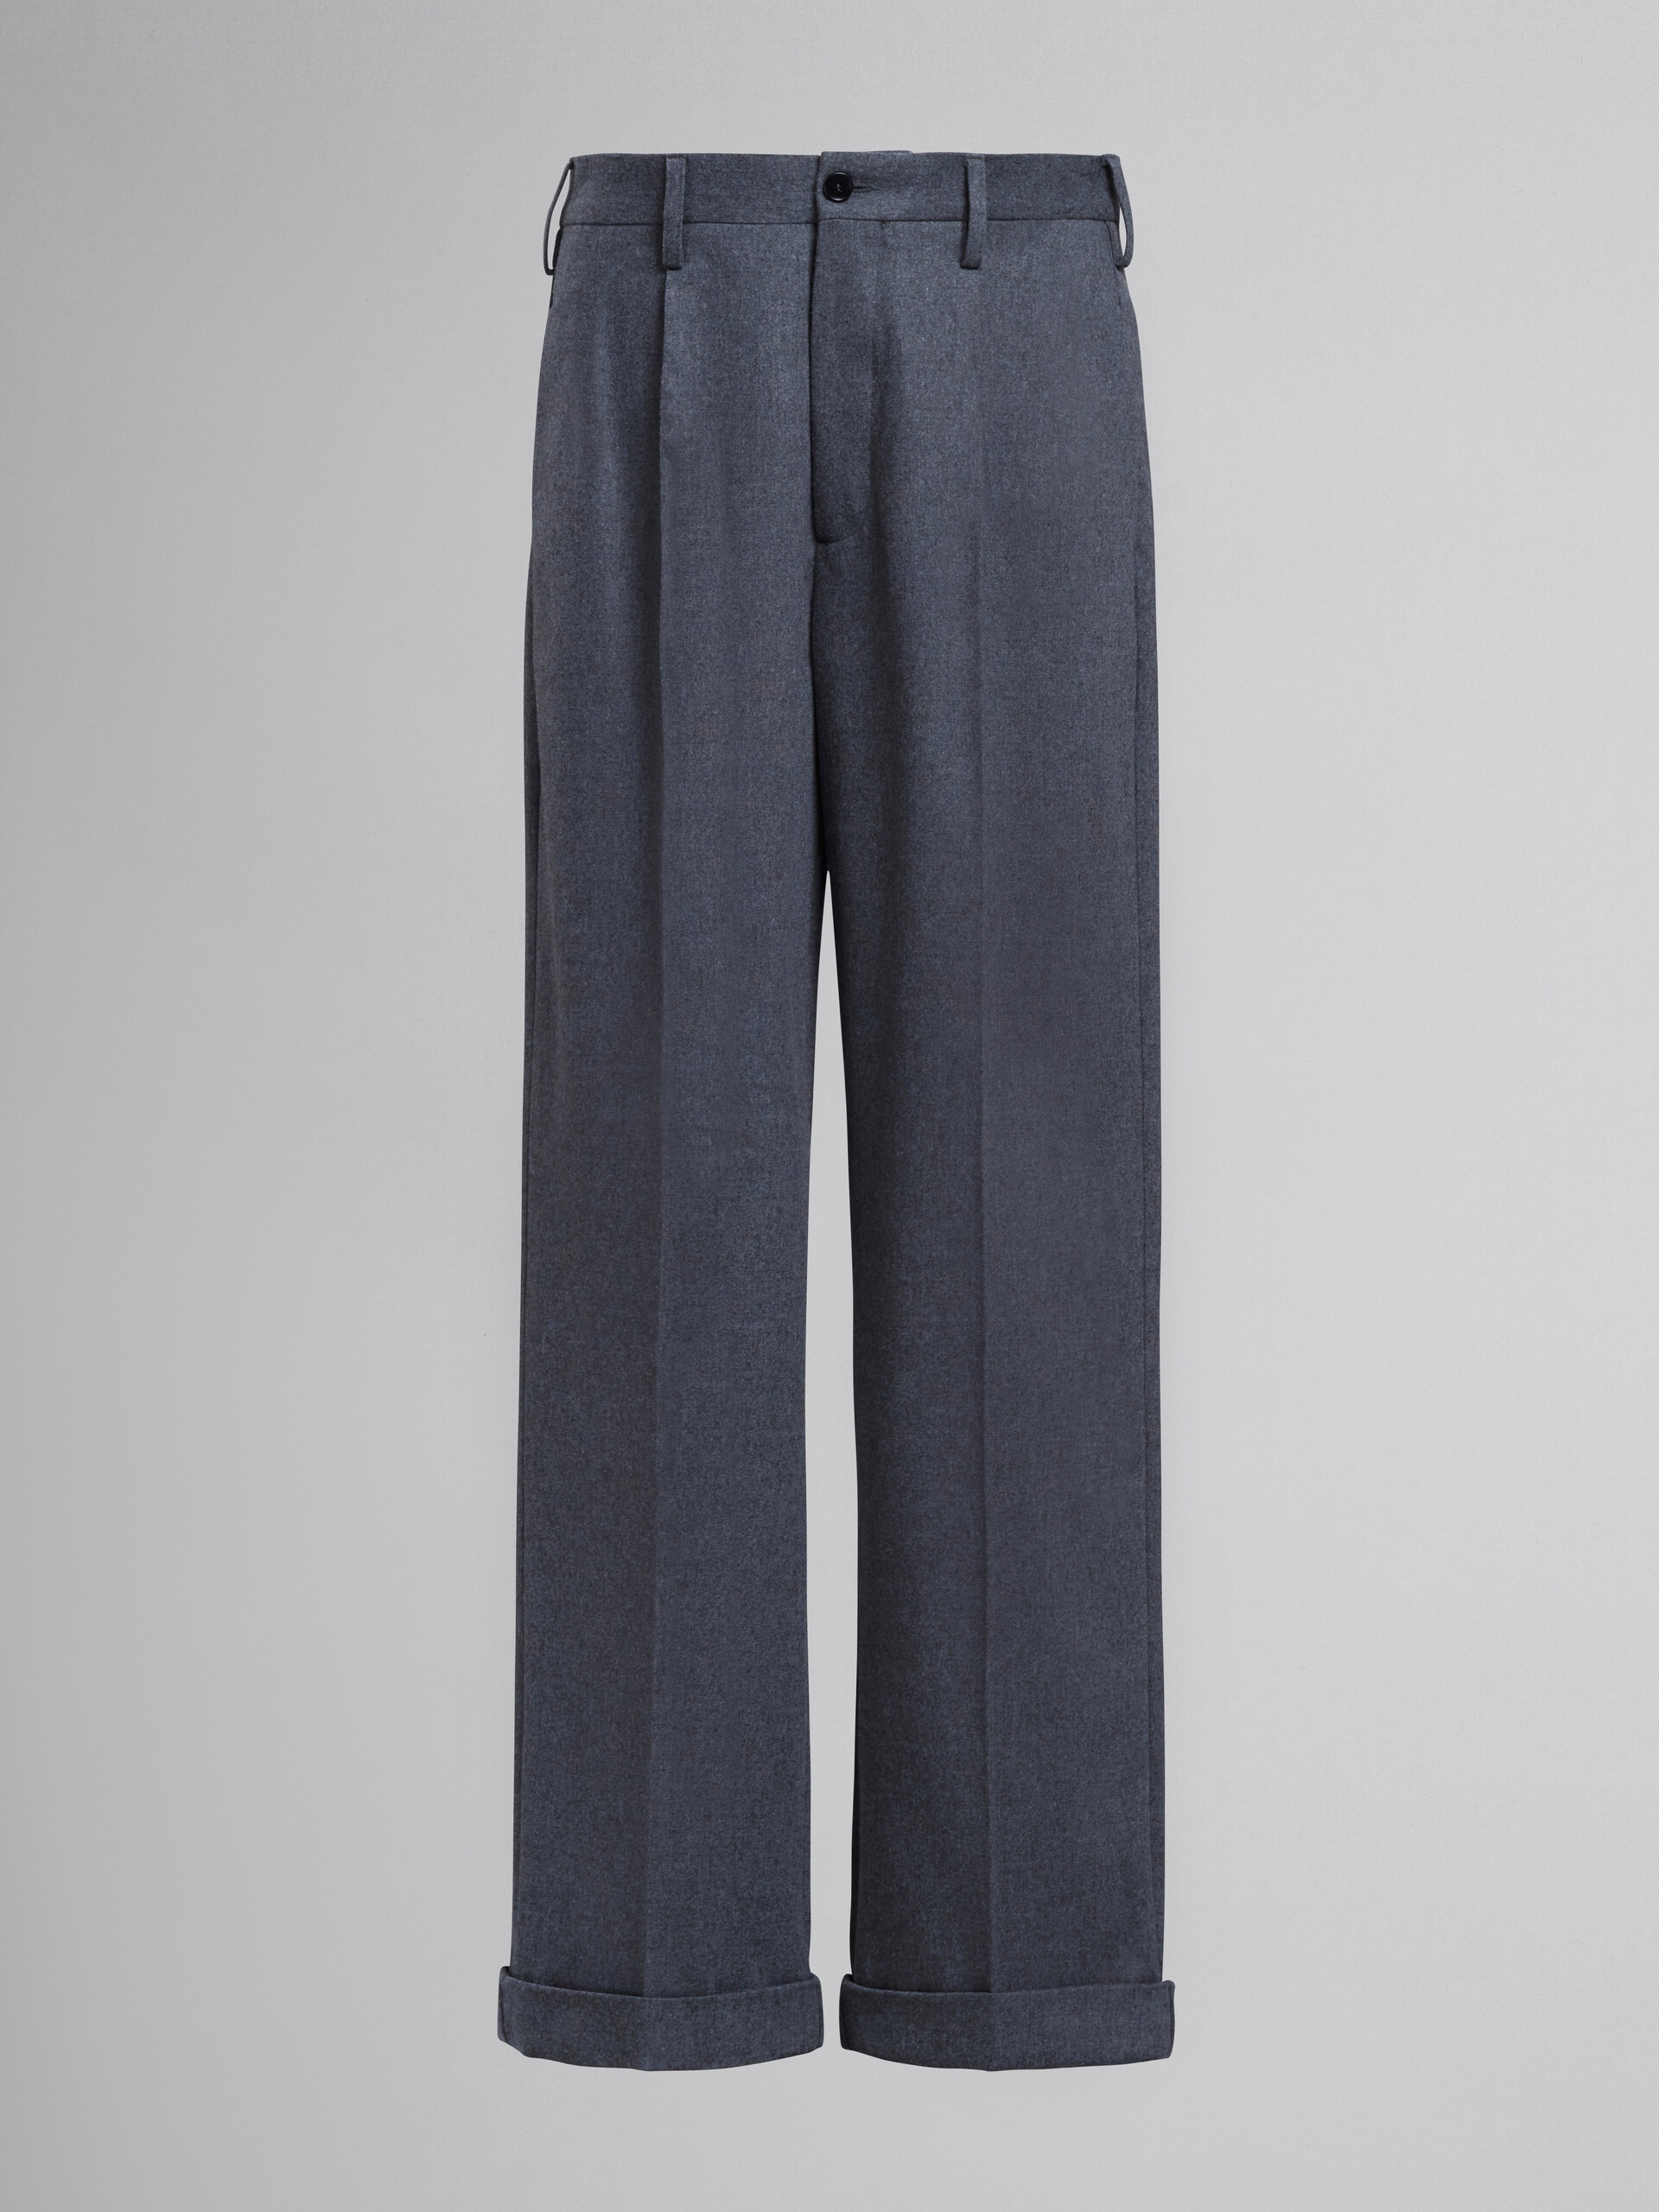 Grey tuxedo-style pants - Pants - Image 1